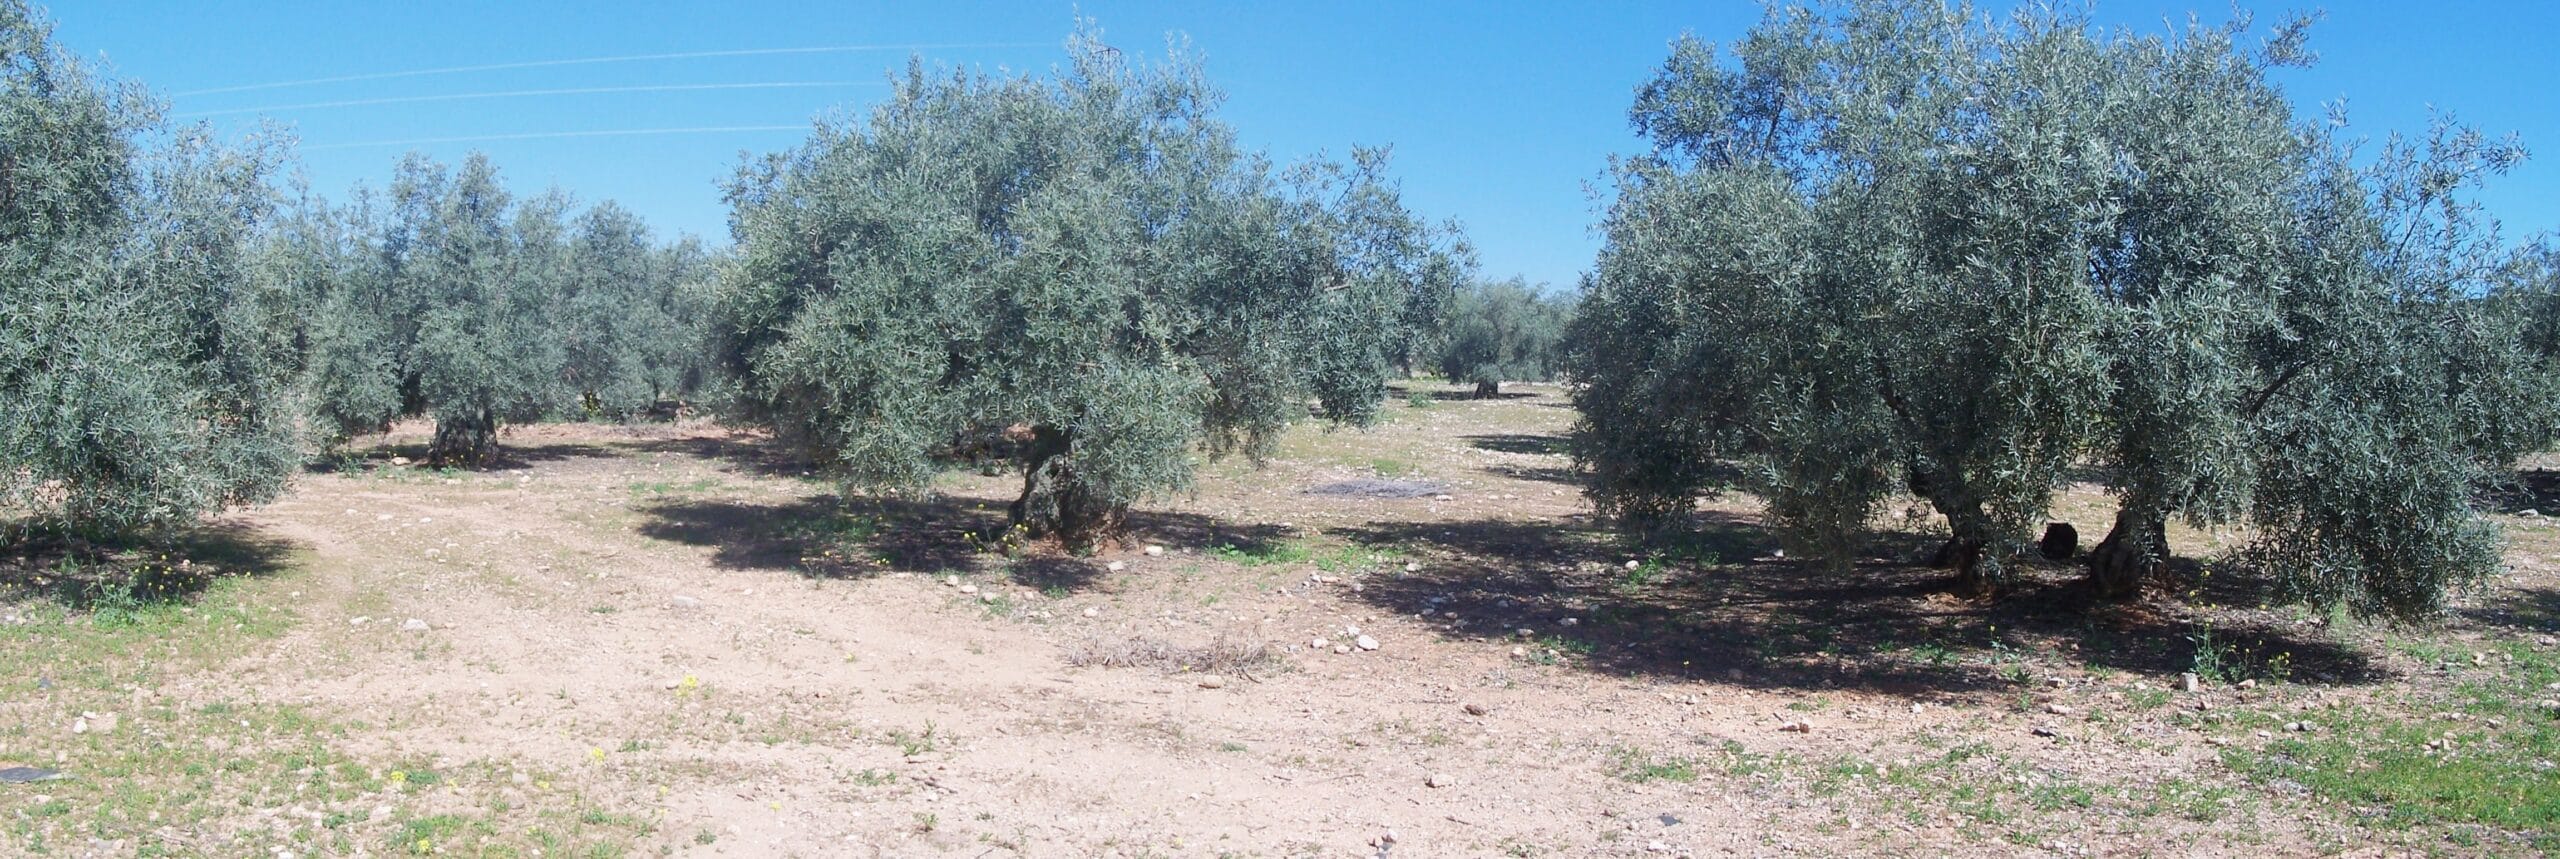 Olive Grove, nabij Cordoba, Spanje